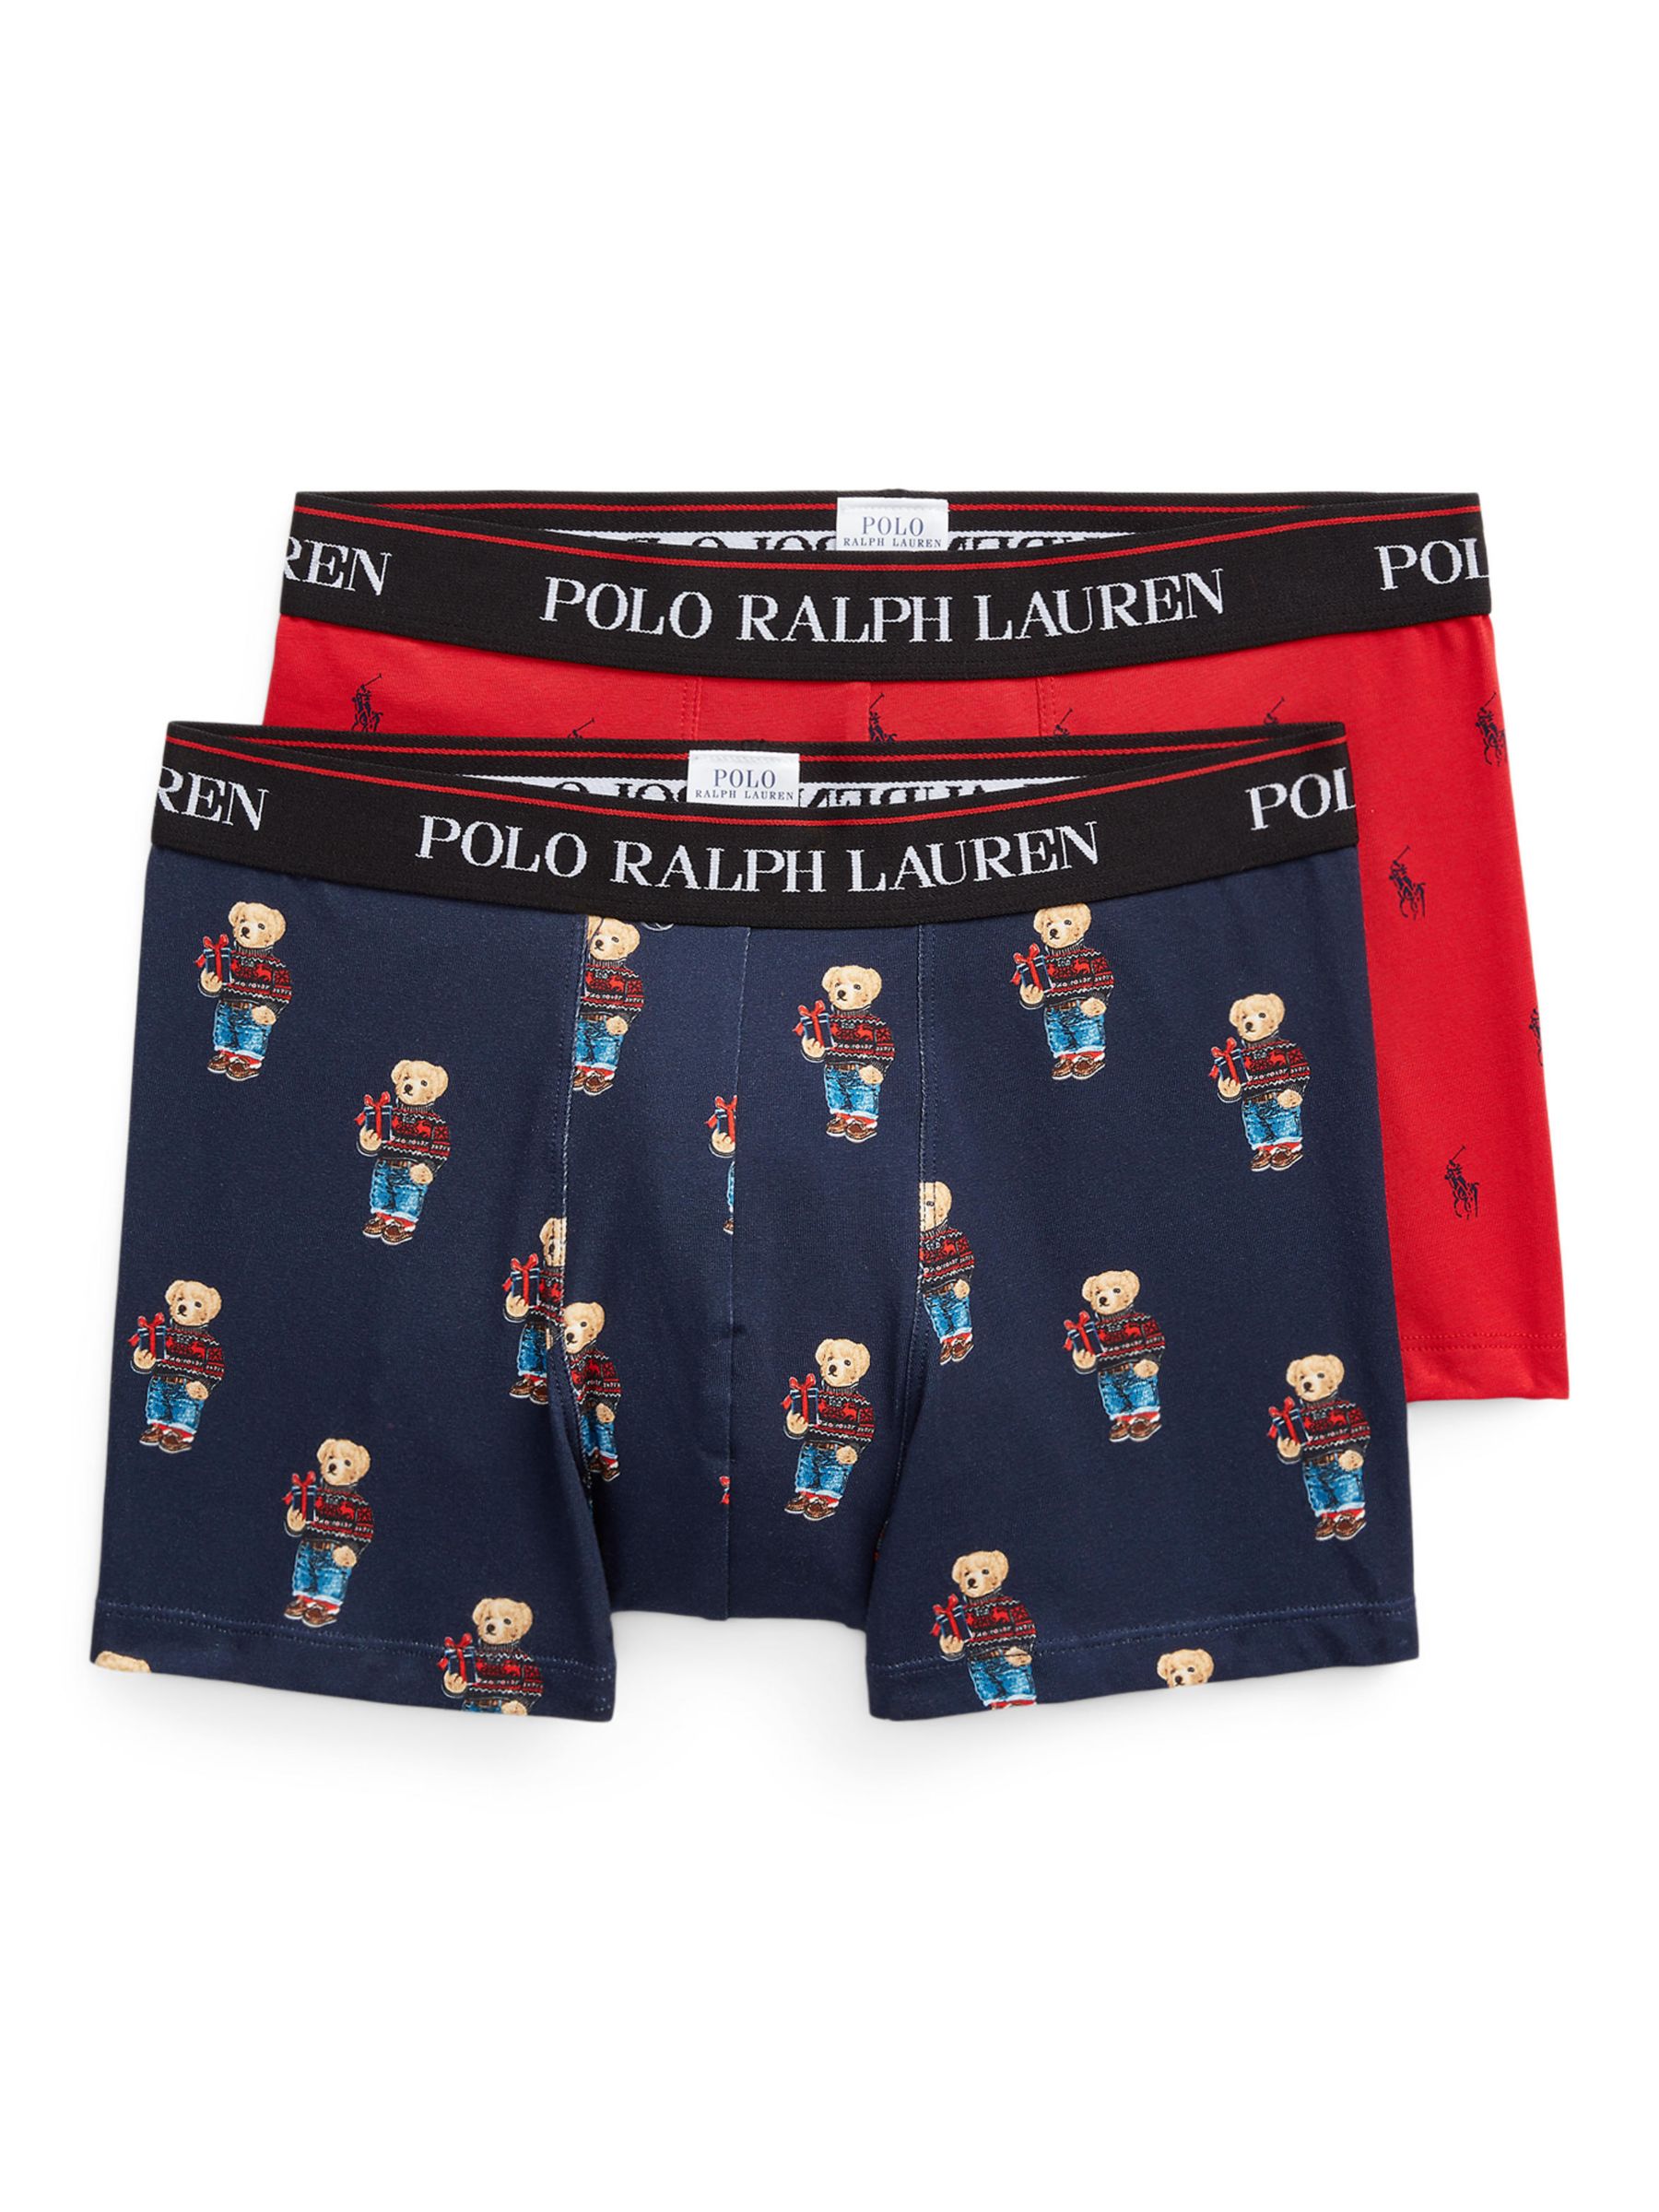 Polo Ralph Lauren Xmas Bear Trunks, Pack of 2, Multi